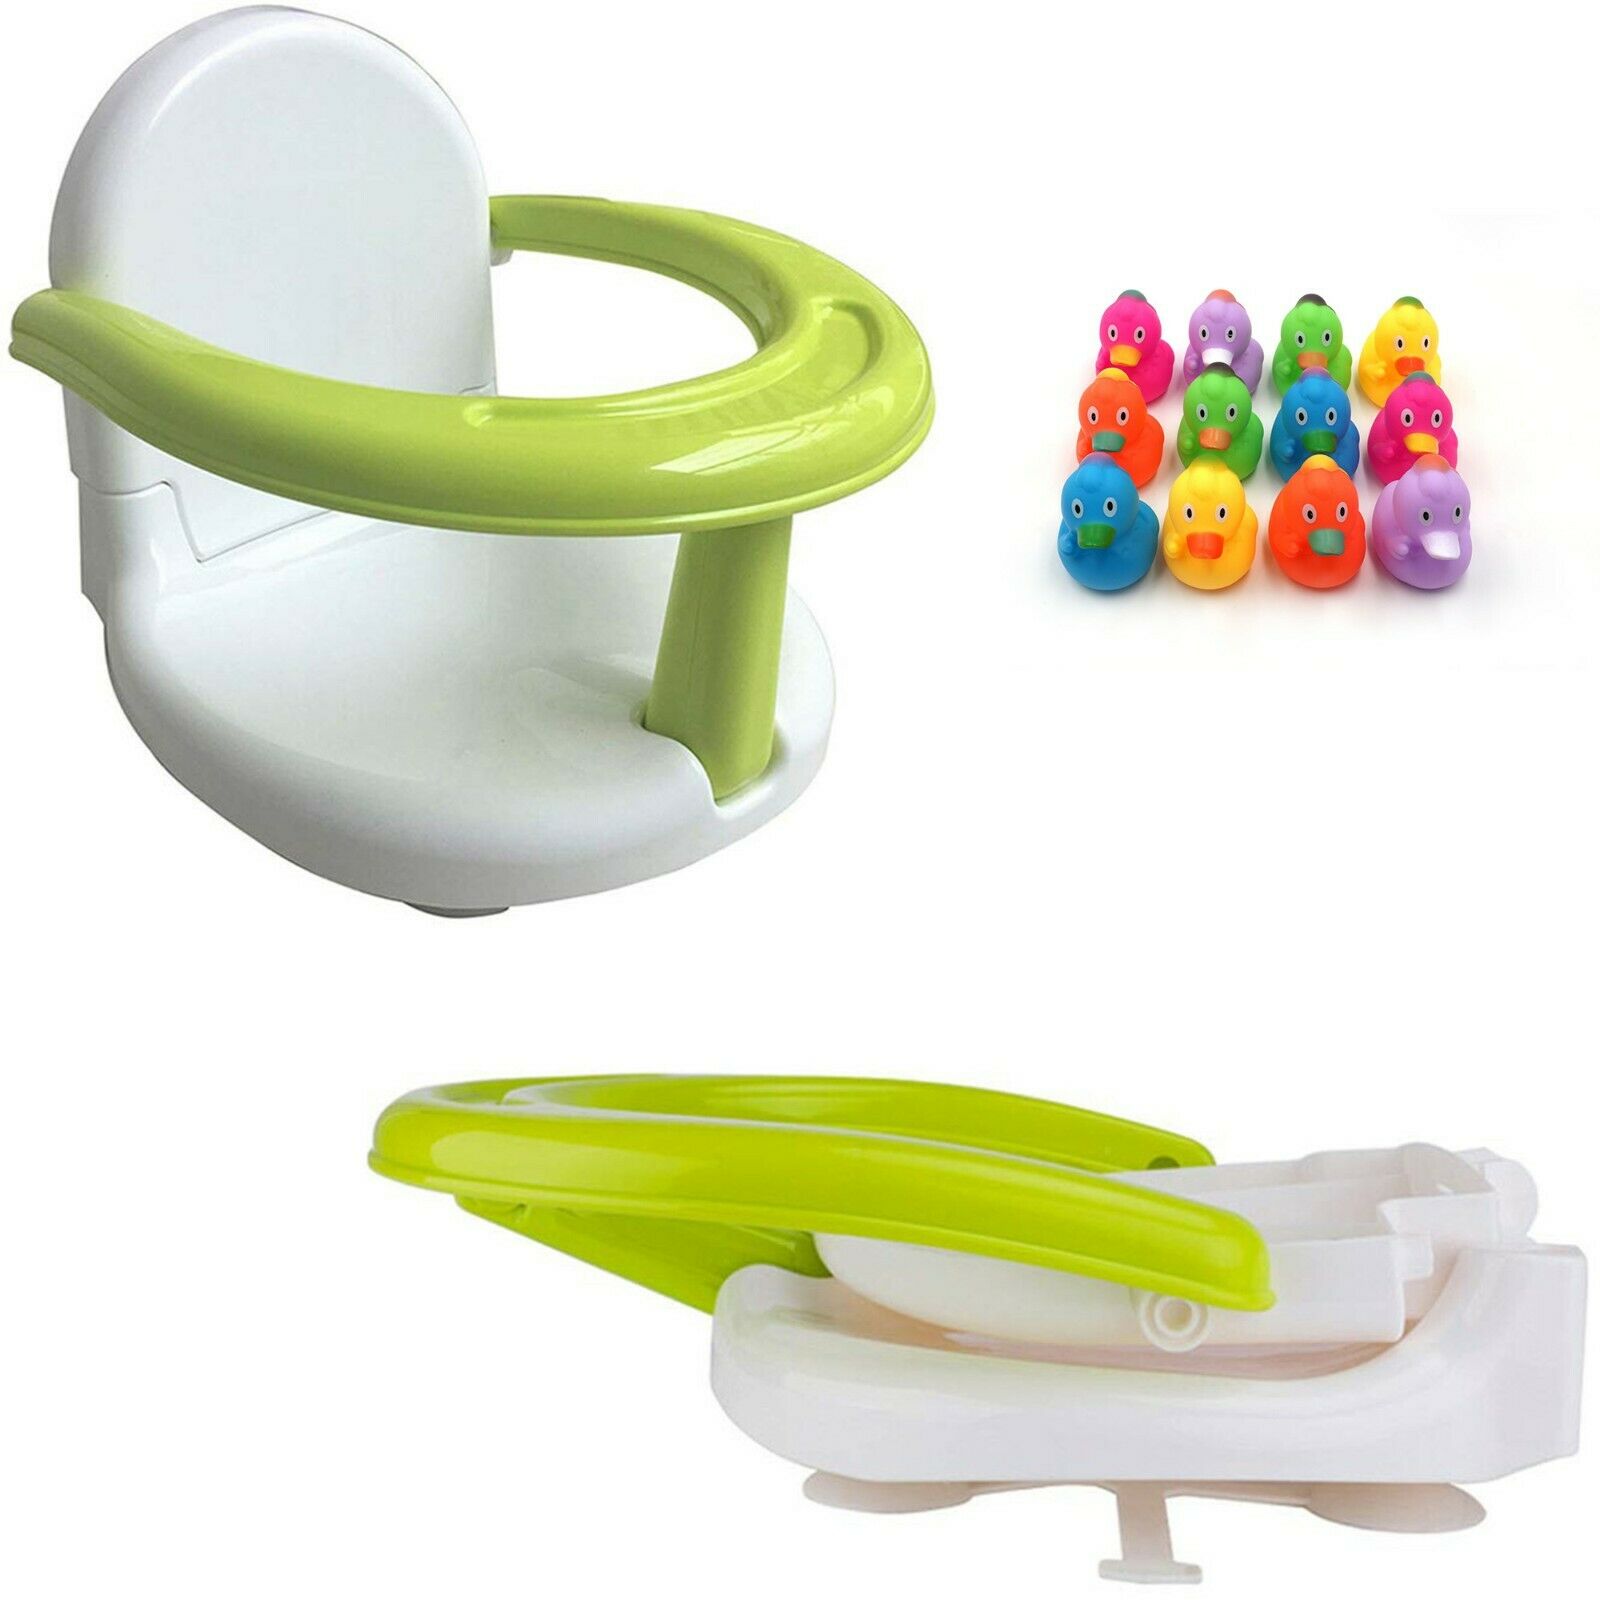 Foldable Baby Bath Seat Baby Bath Tub Ring Seat Infant Bath Seat Chair +12 Ducks